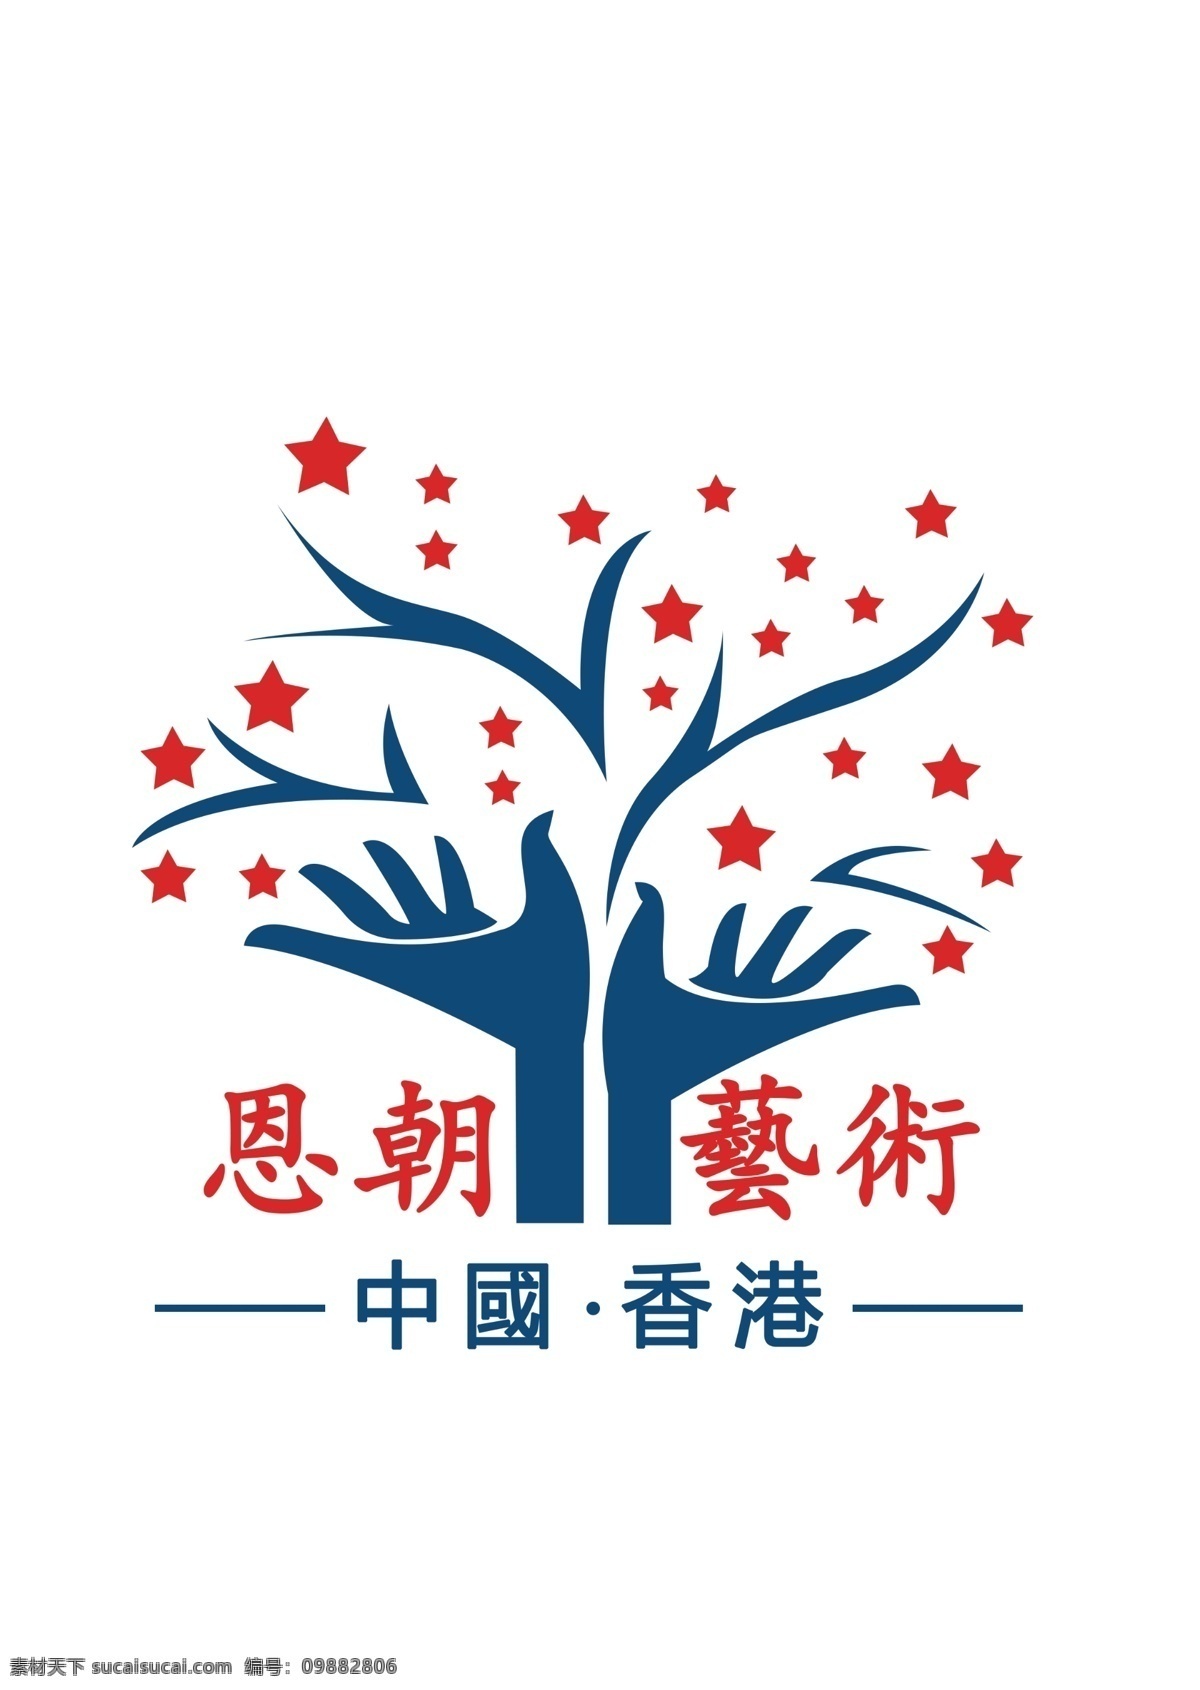 香港 恩 艺术 标志 香港恩朝艺术 logo 中国 恩朝艺术